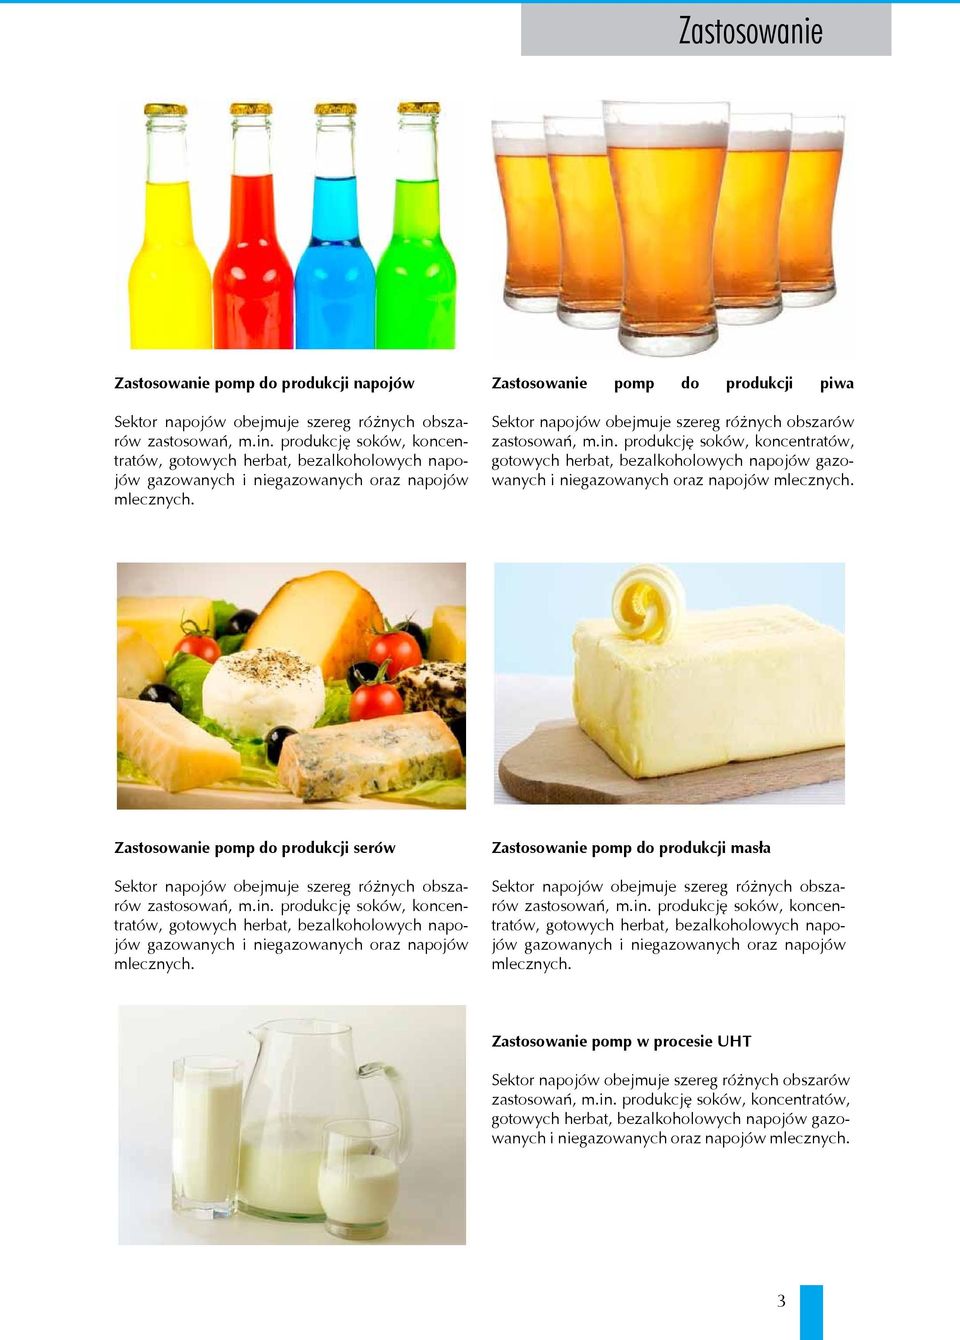 Zastosowanie pomp do produkcji piwa Sektor napojów obejmuje szereg różnych obszarów zastosowań, m.in.